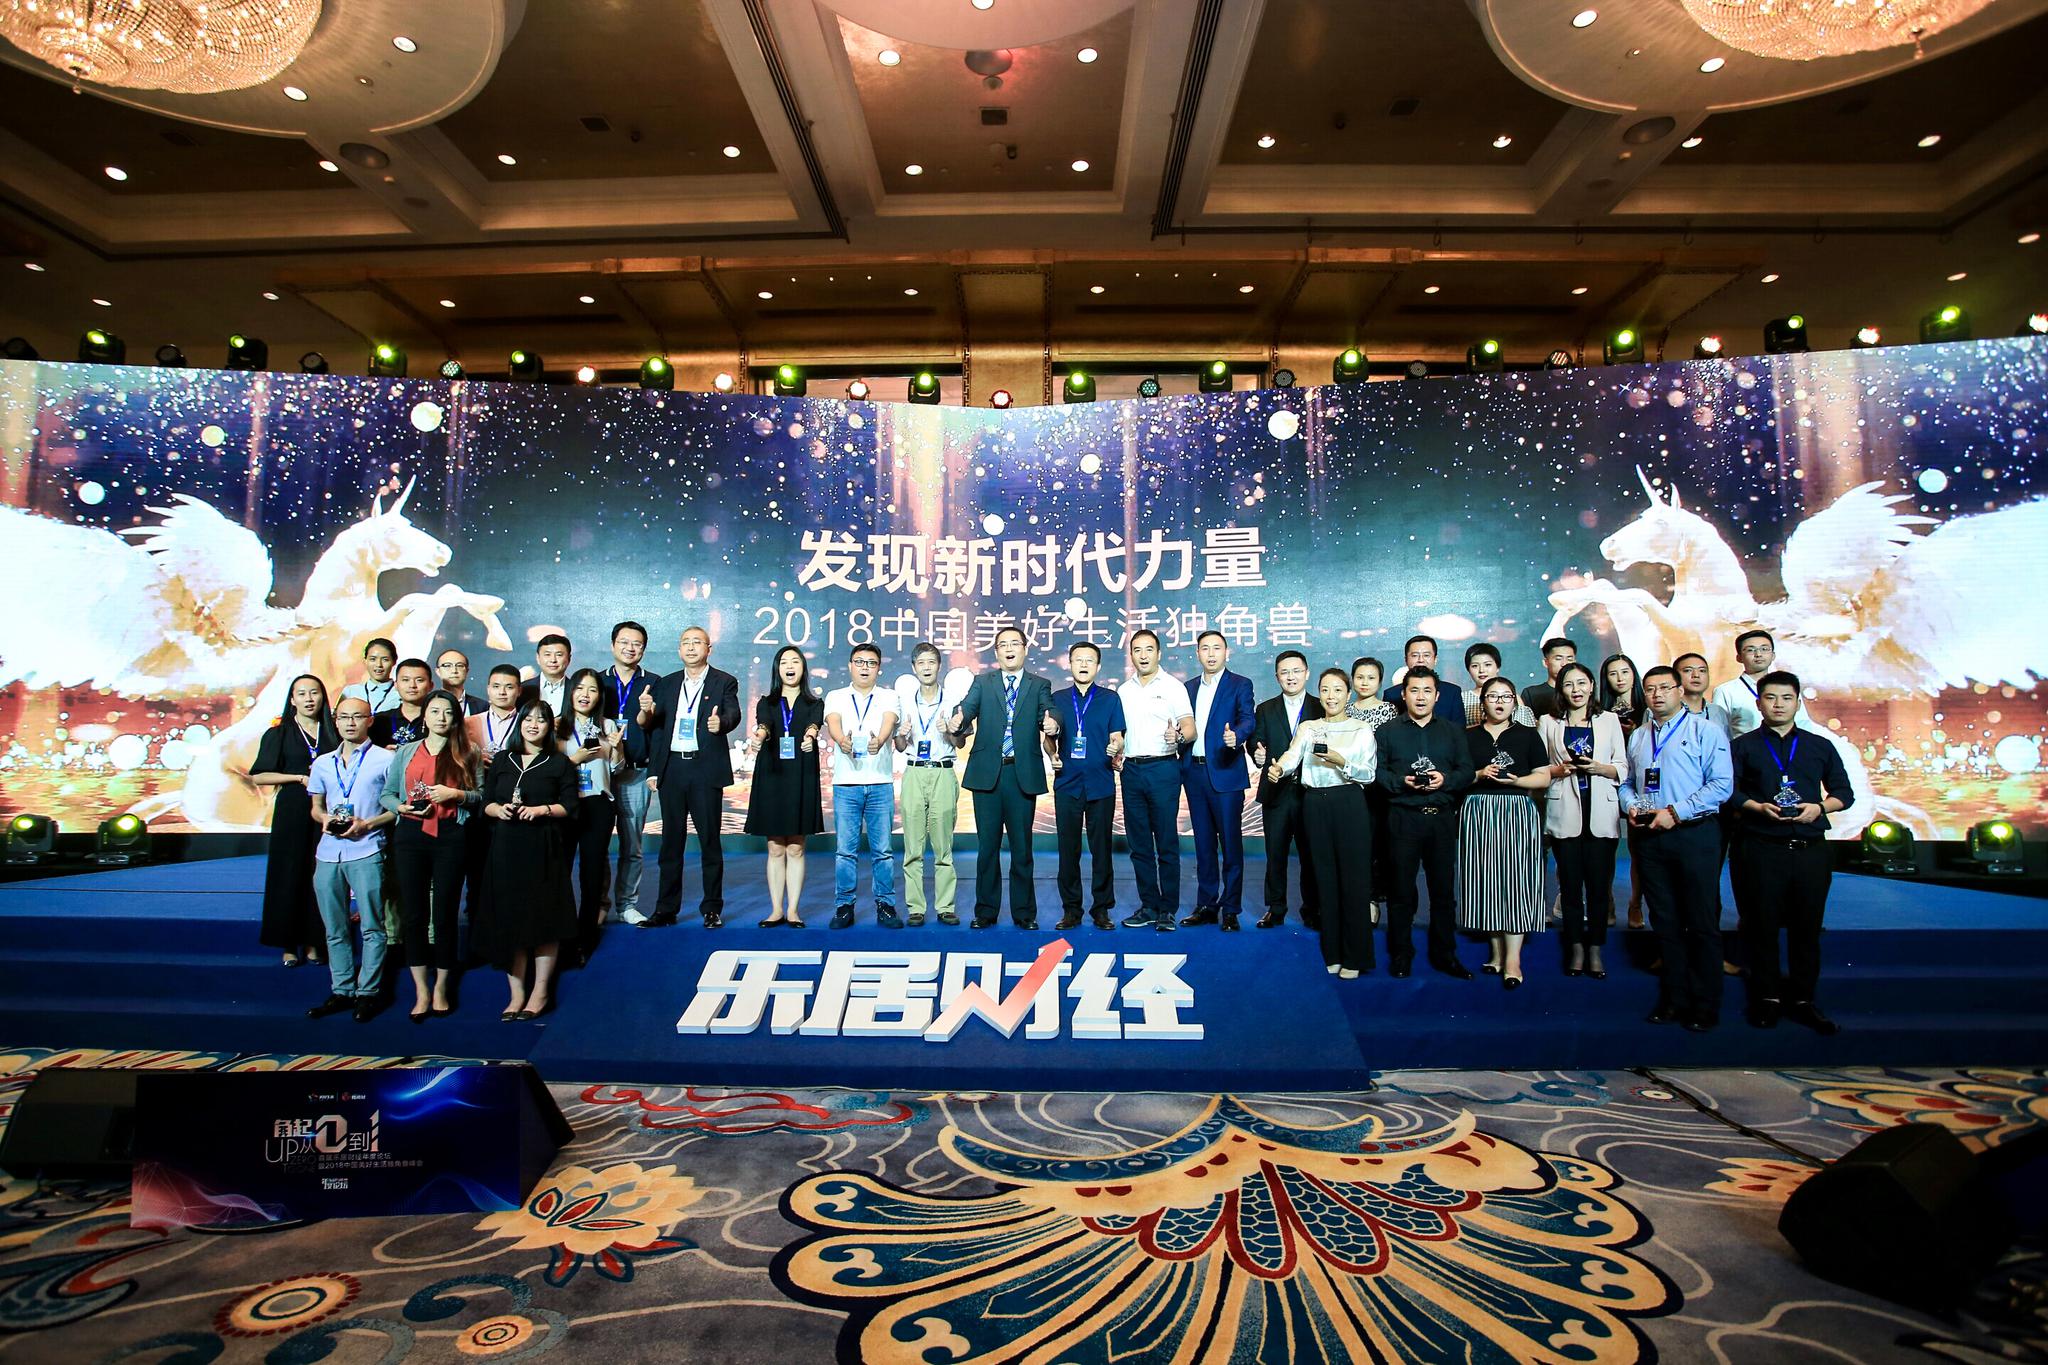 快讯:52家创新企业荣获2018中国美好生活潜力